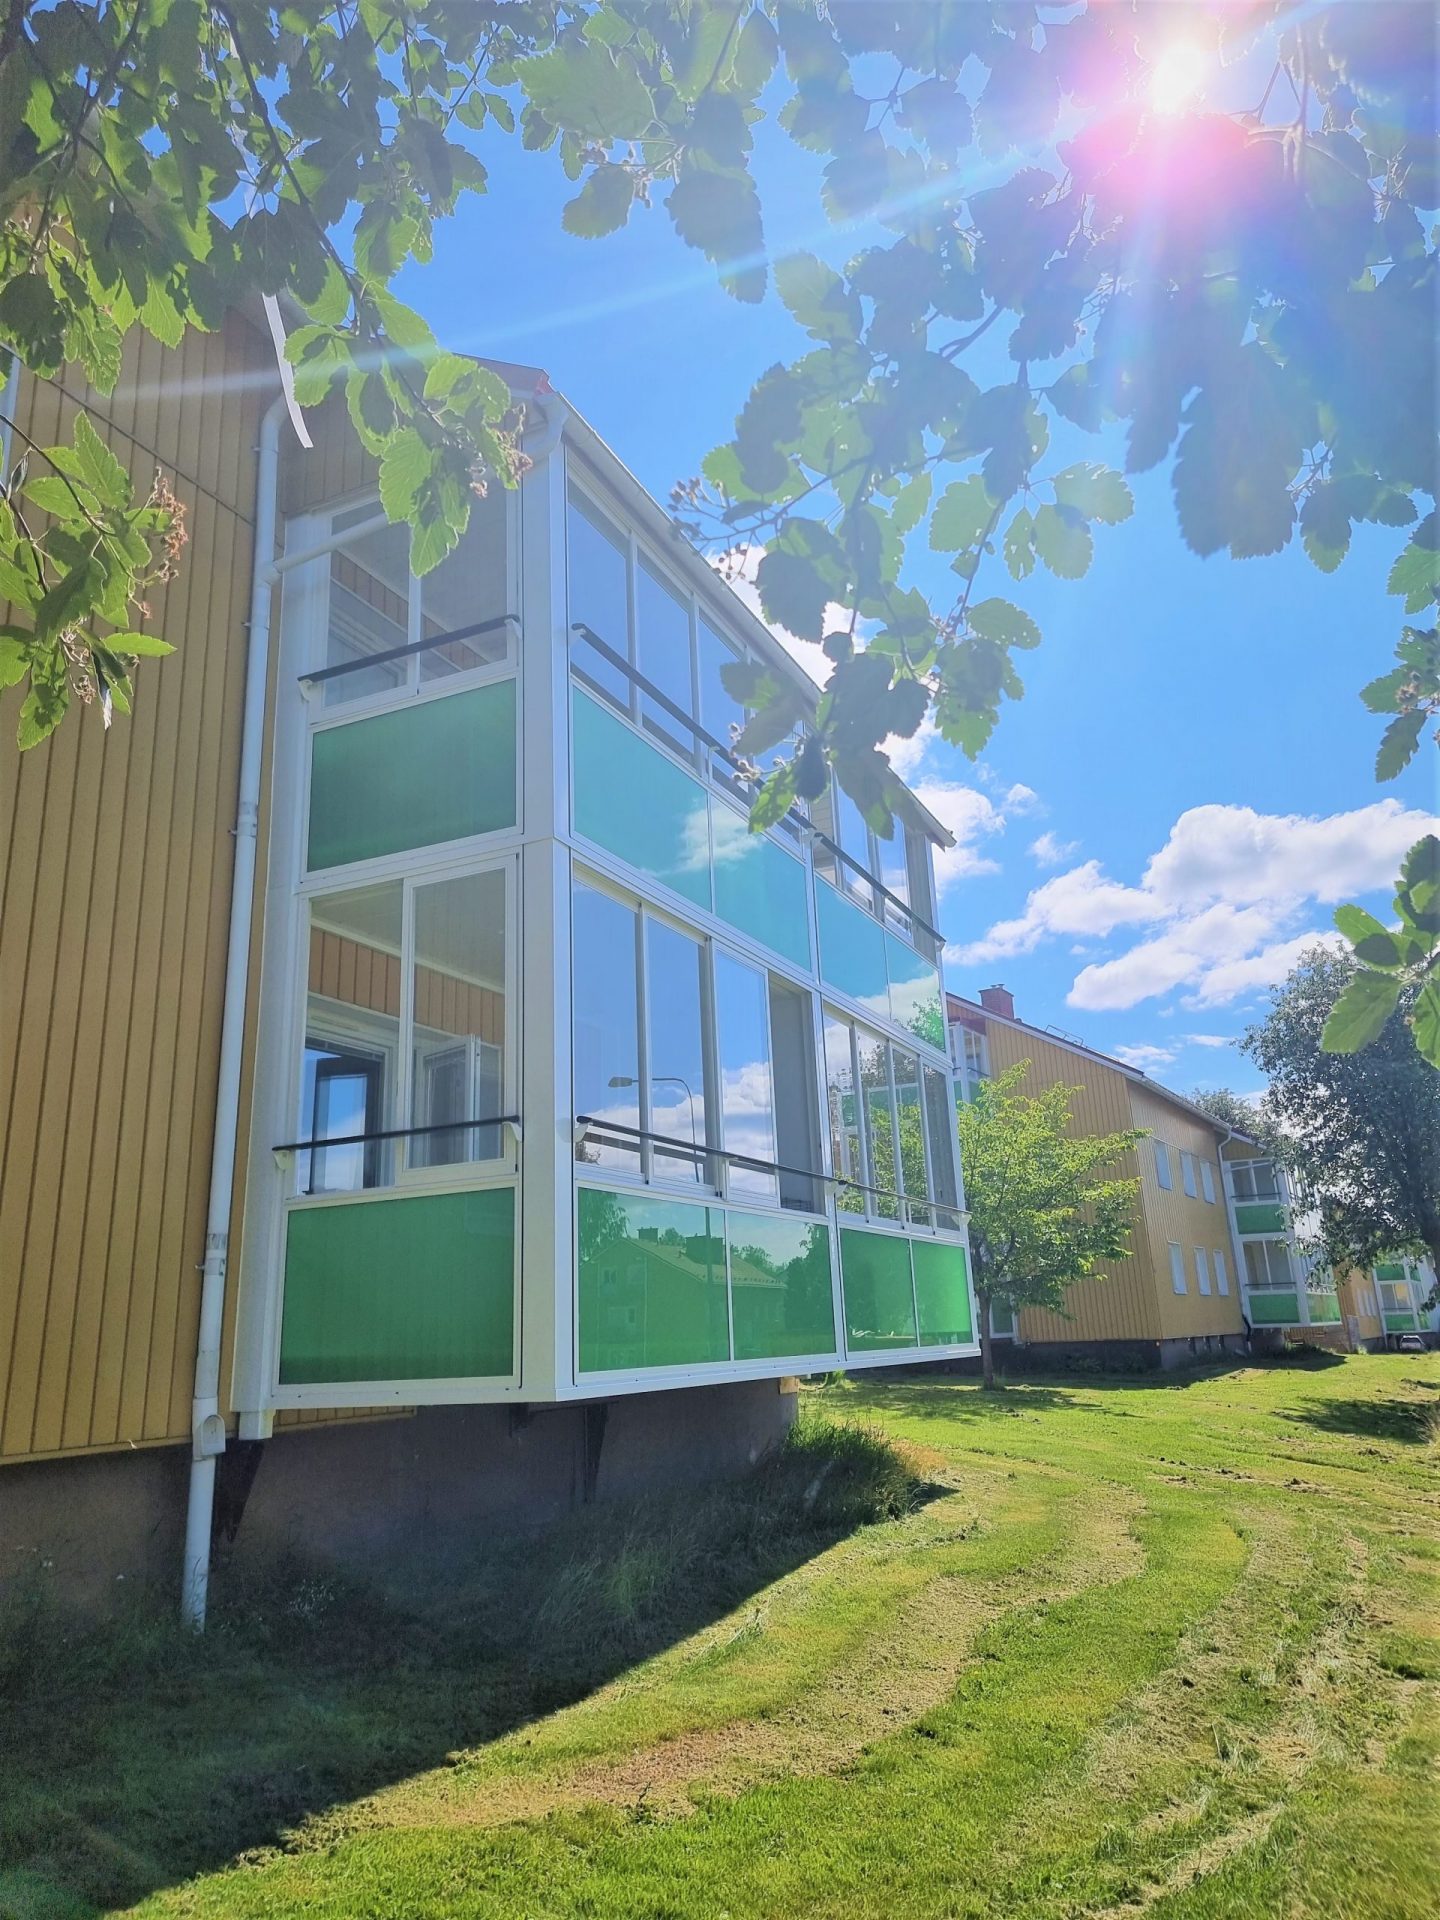 Gula hus med gröna balkonger